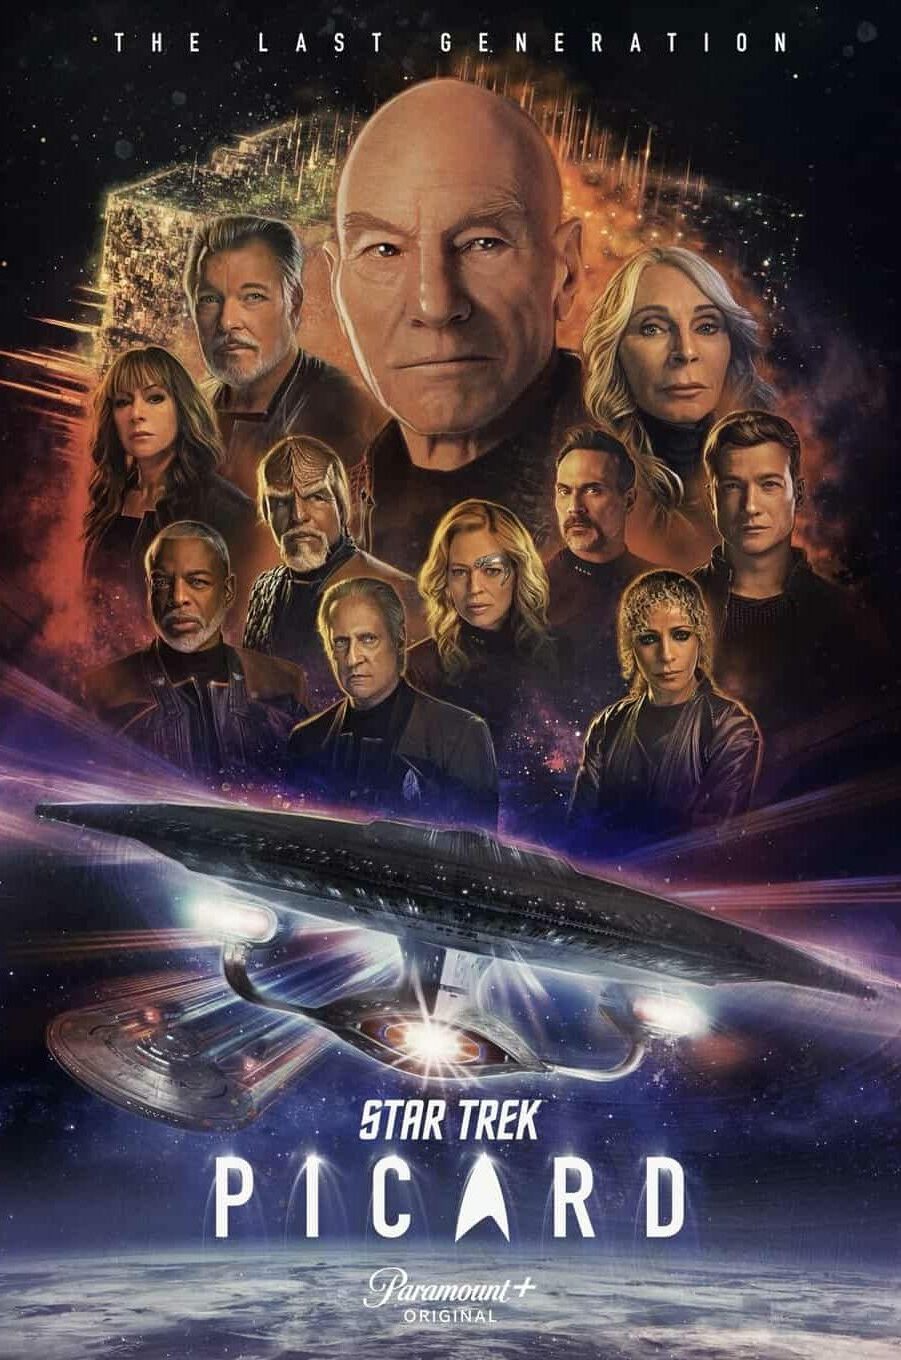 Star Trek: Picard Season 3 & Final Season Finale The Last Generation